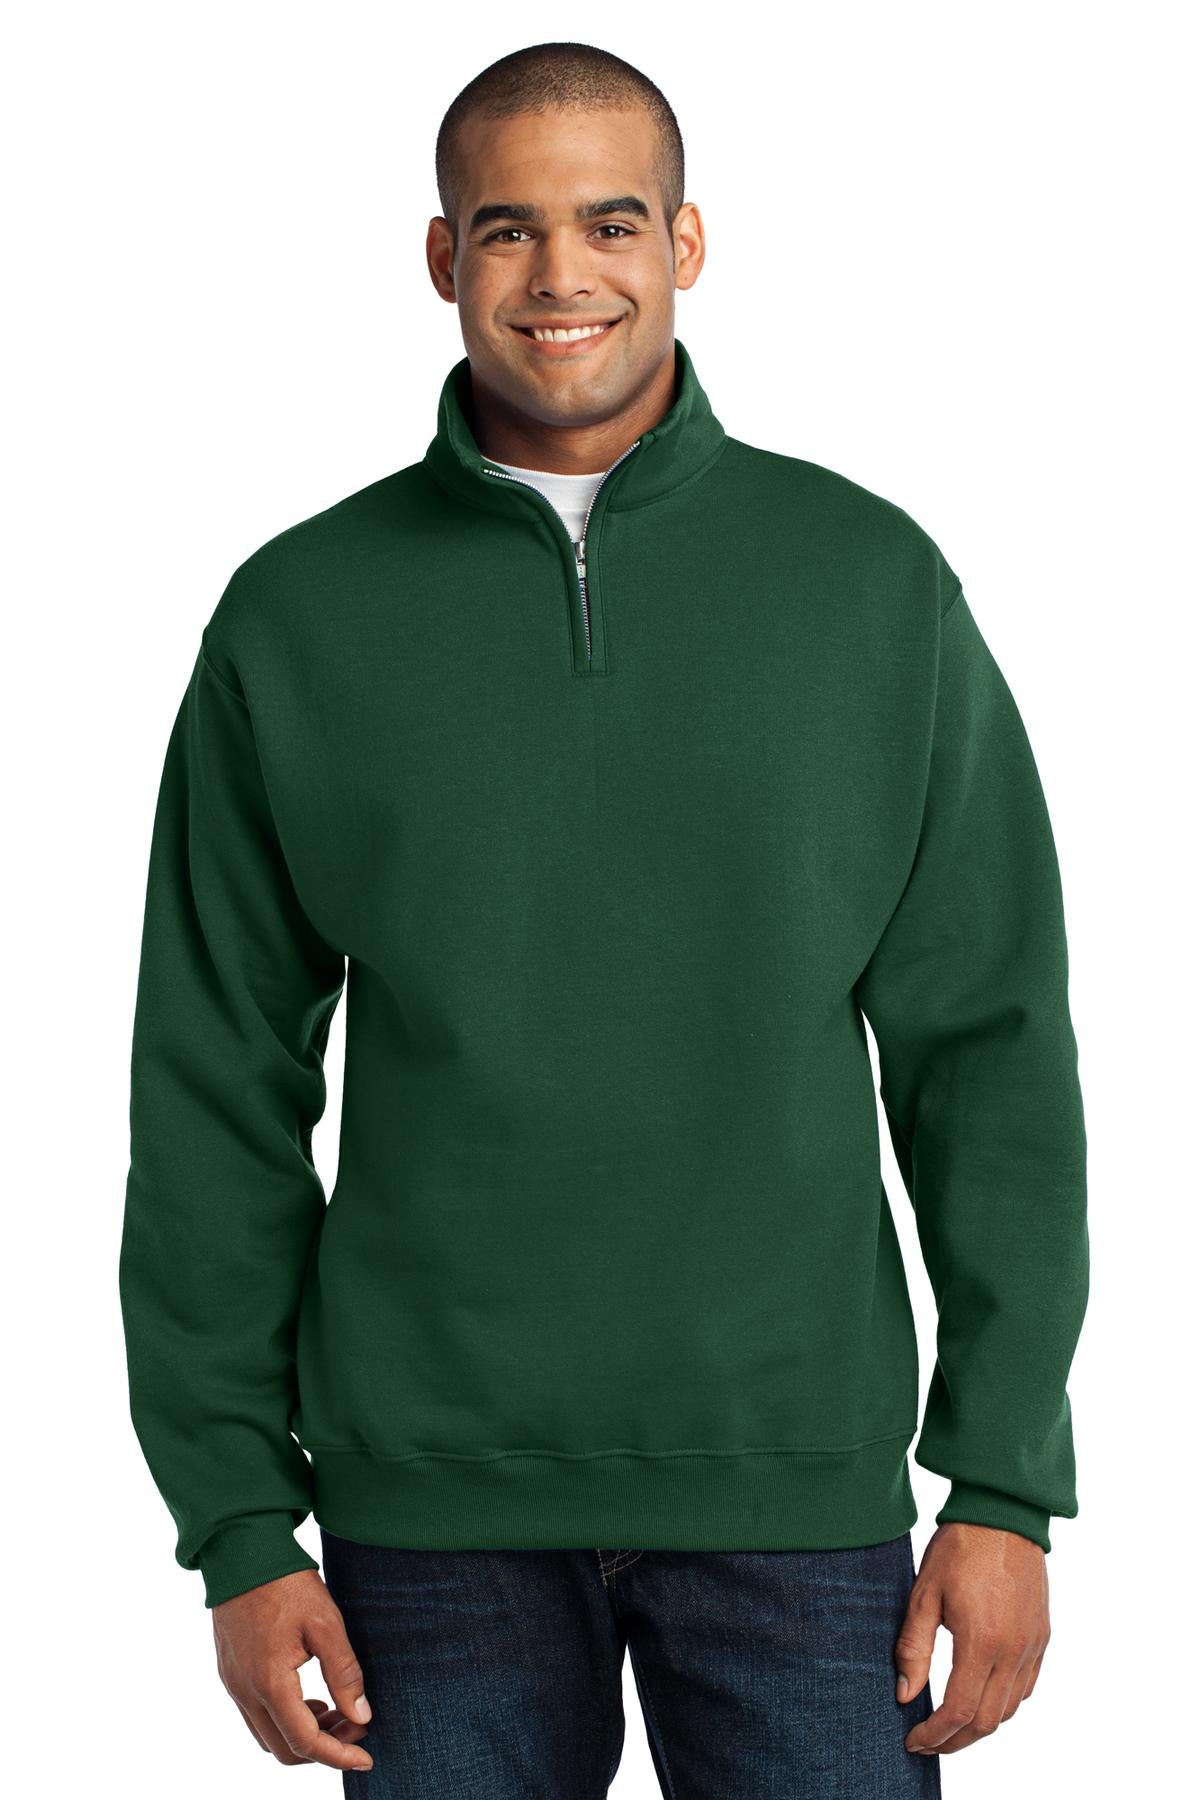 JERZEES® - NuBlend® 1/4-Zip Cadet Collar Sweatshirt. 995M - DFW Impression